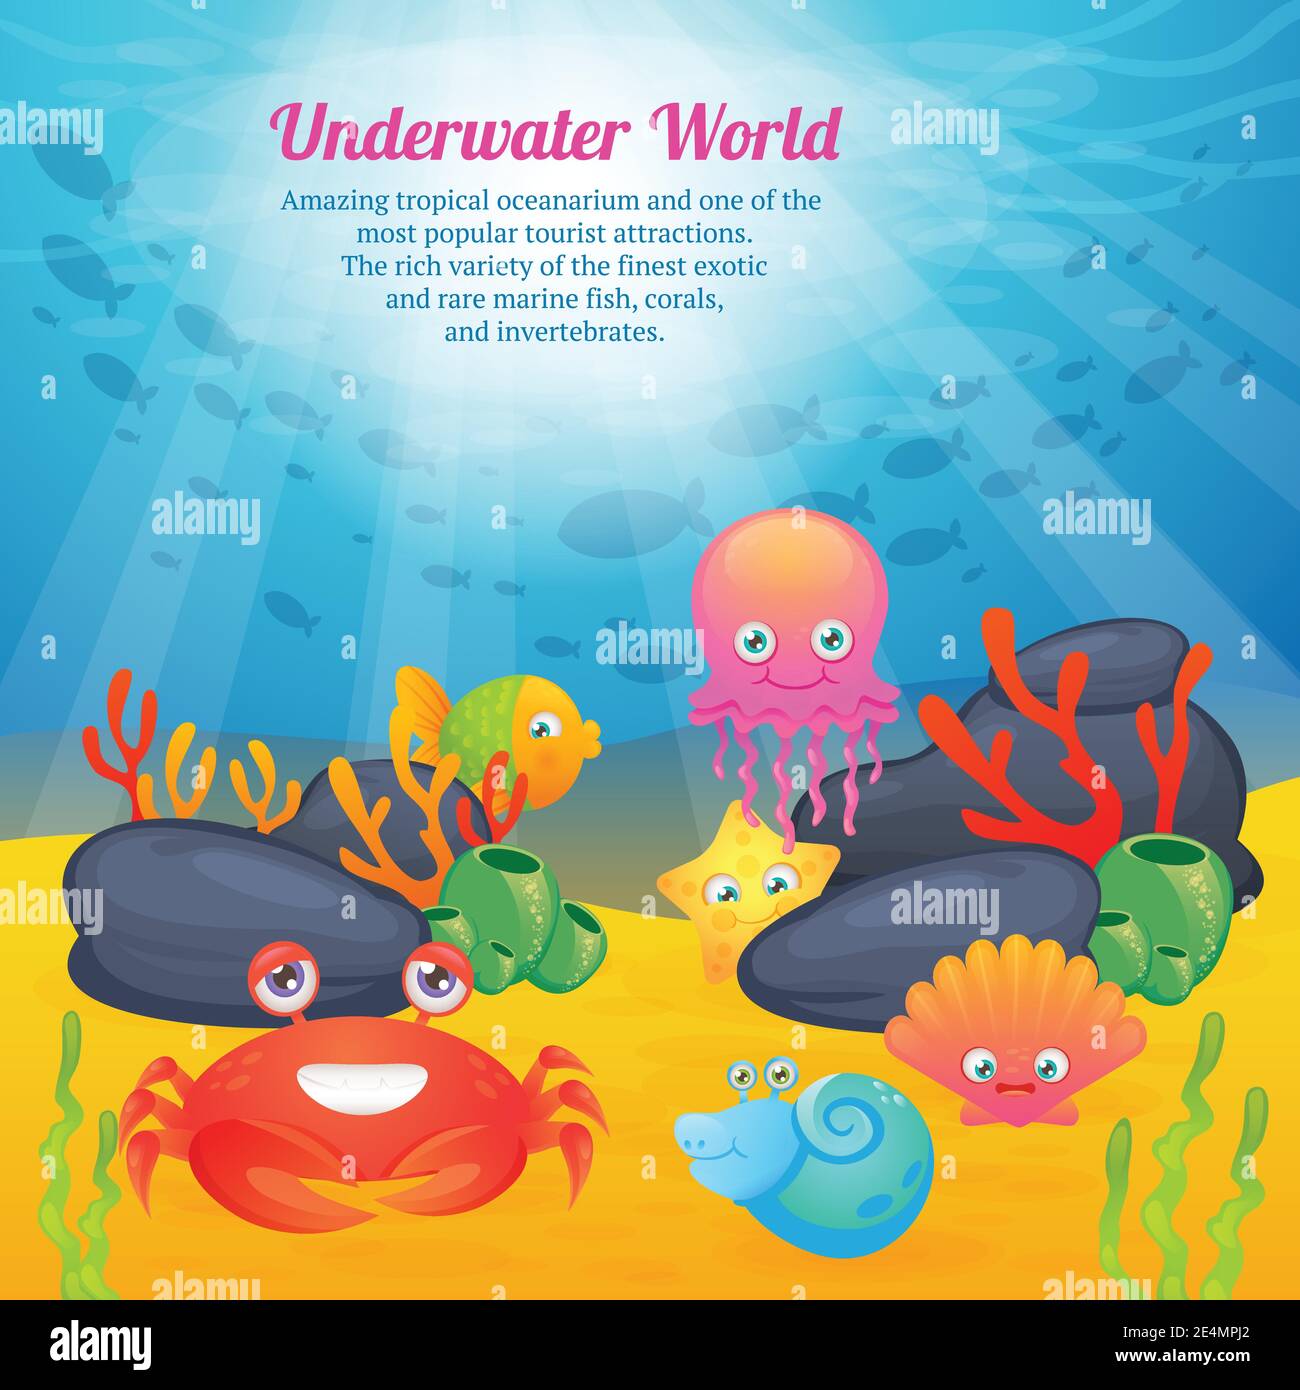 Exotische Unterwasserwelt tropischen Ozeanarium Cartoon Kreaturen niedlichen Stern Fische Korallen Tiere Werbung Poster abstrakt Vektor Illustration. Stock Vektor